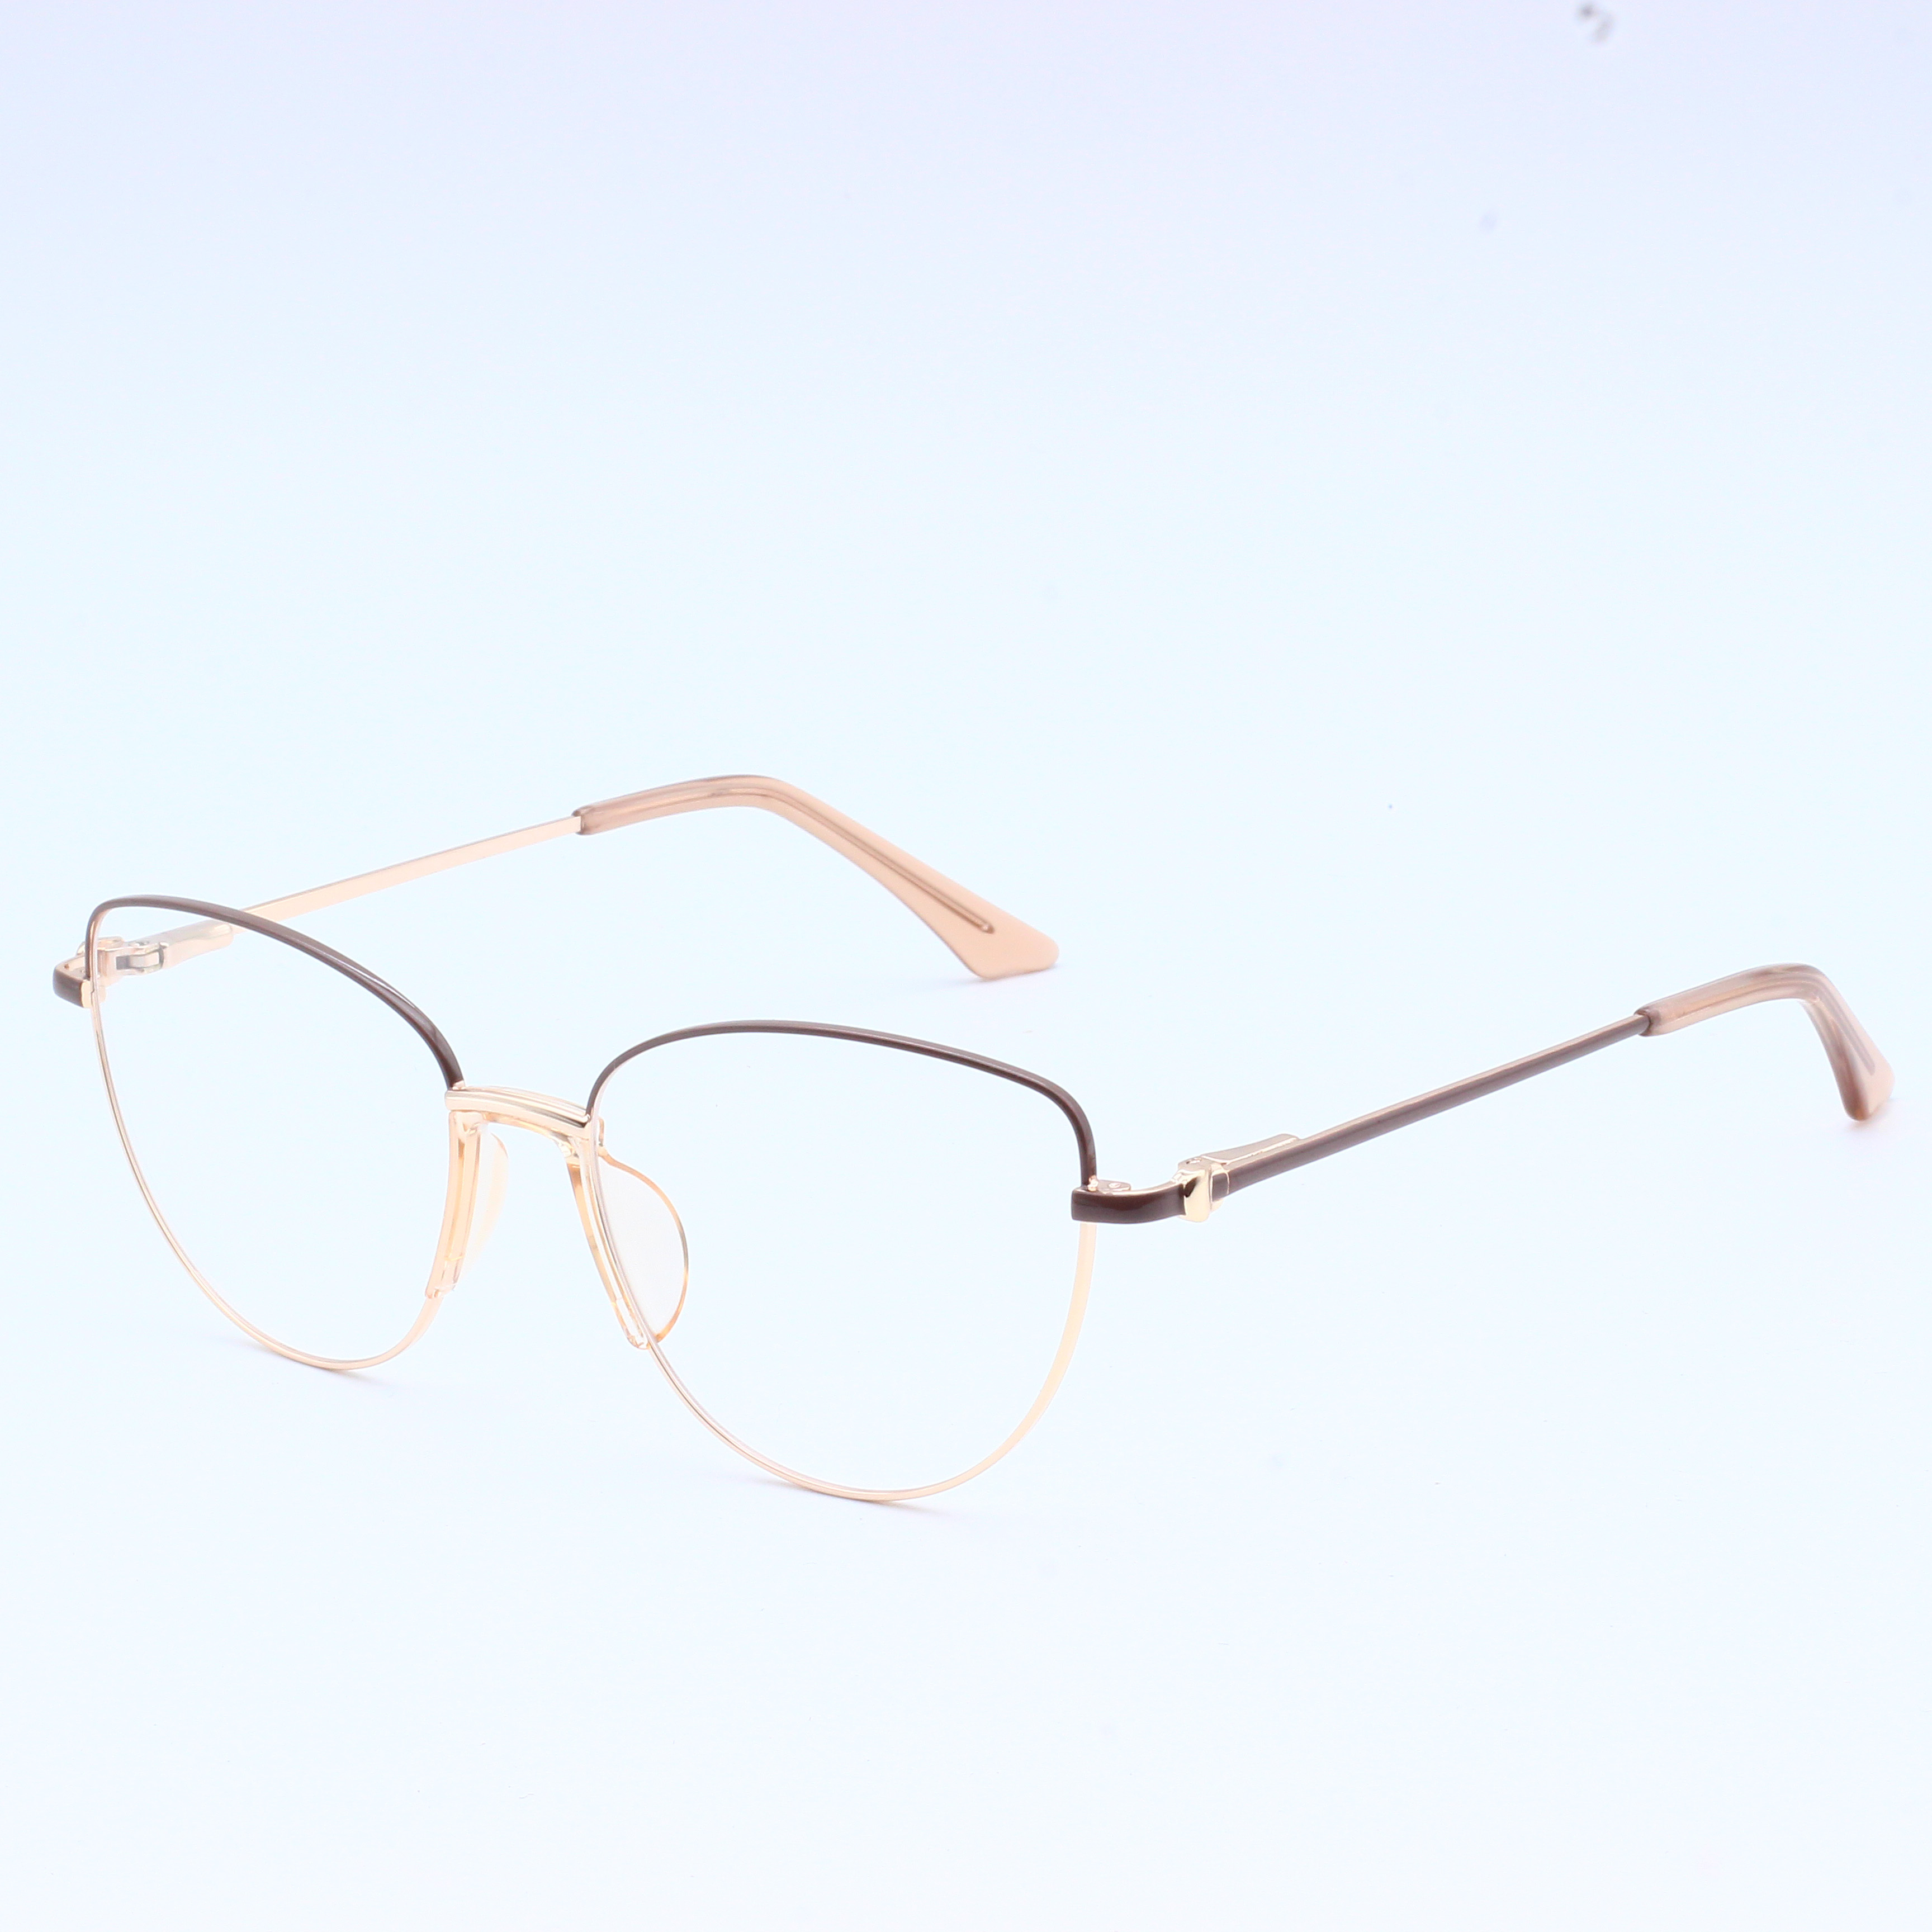 Cheap price frame metal eyewear frame stock ready Optical (7)